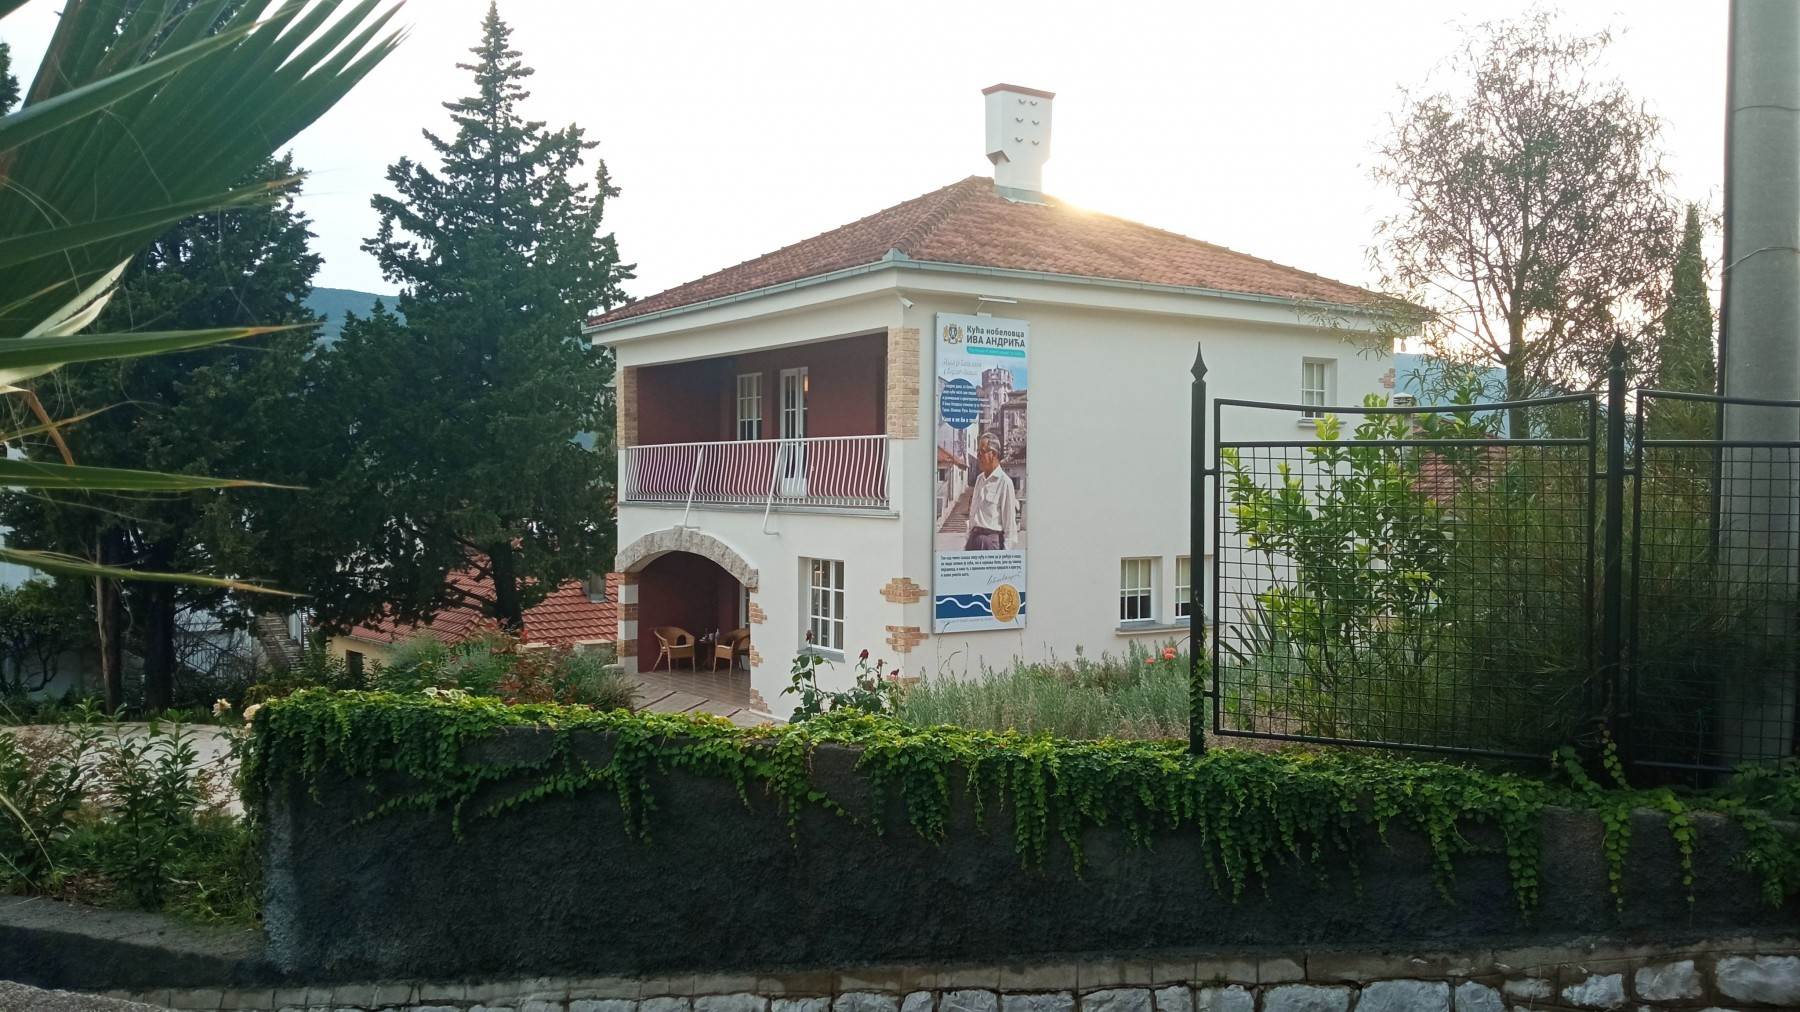  Kuća Ive Andrića i njegove supruge Milice u Herceg Novom 